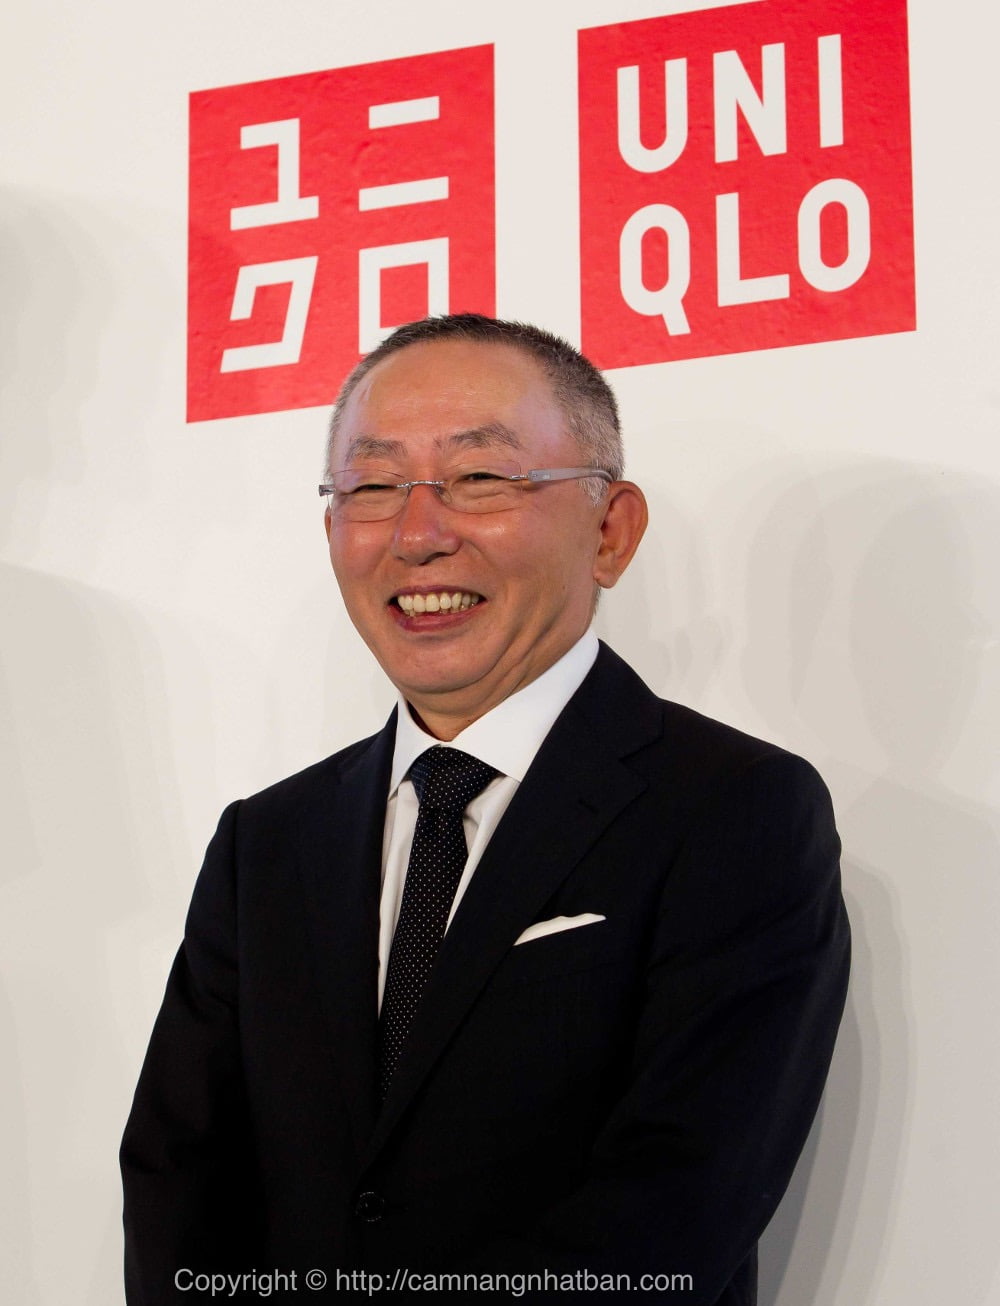 Ông chủ Uniqlo lấy lại ngôi giàu nhất Nhật Bản  Ngôi sao